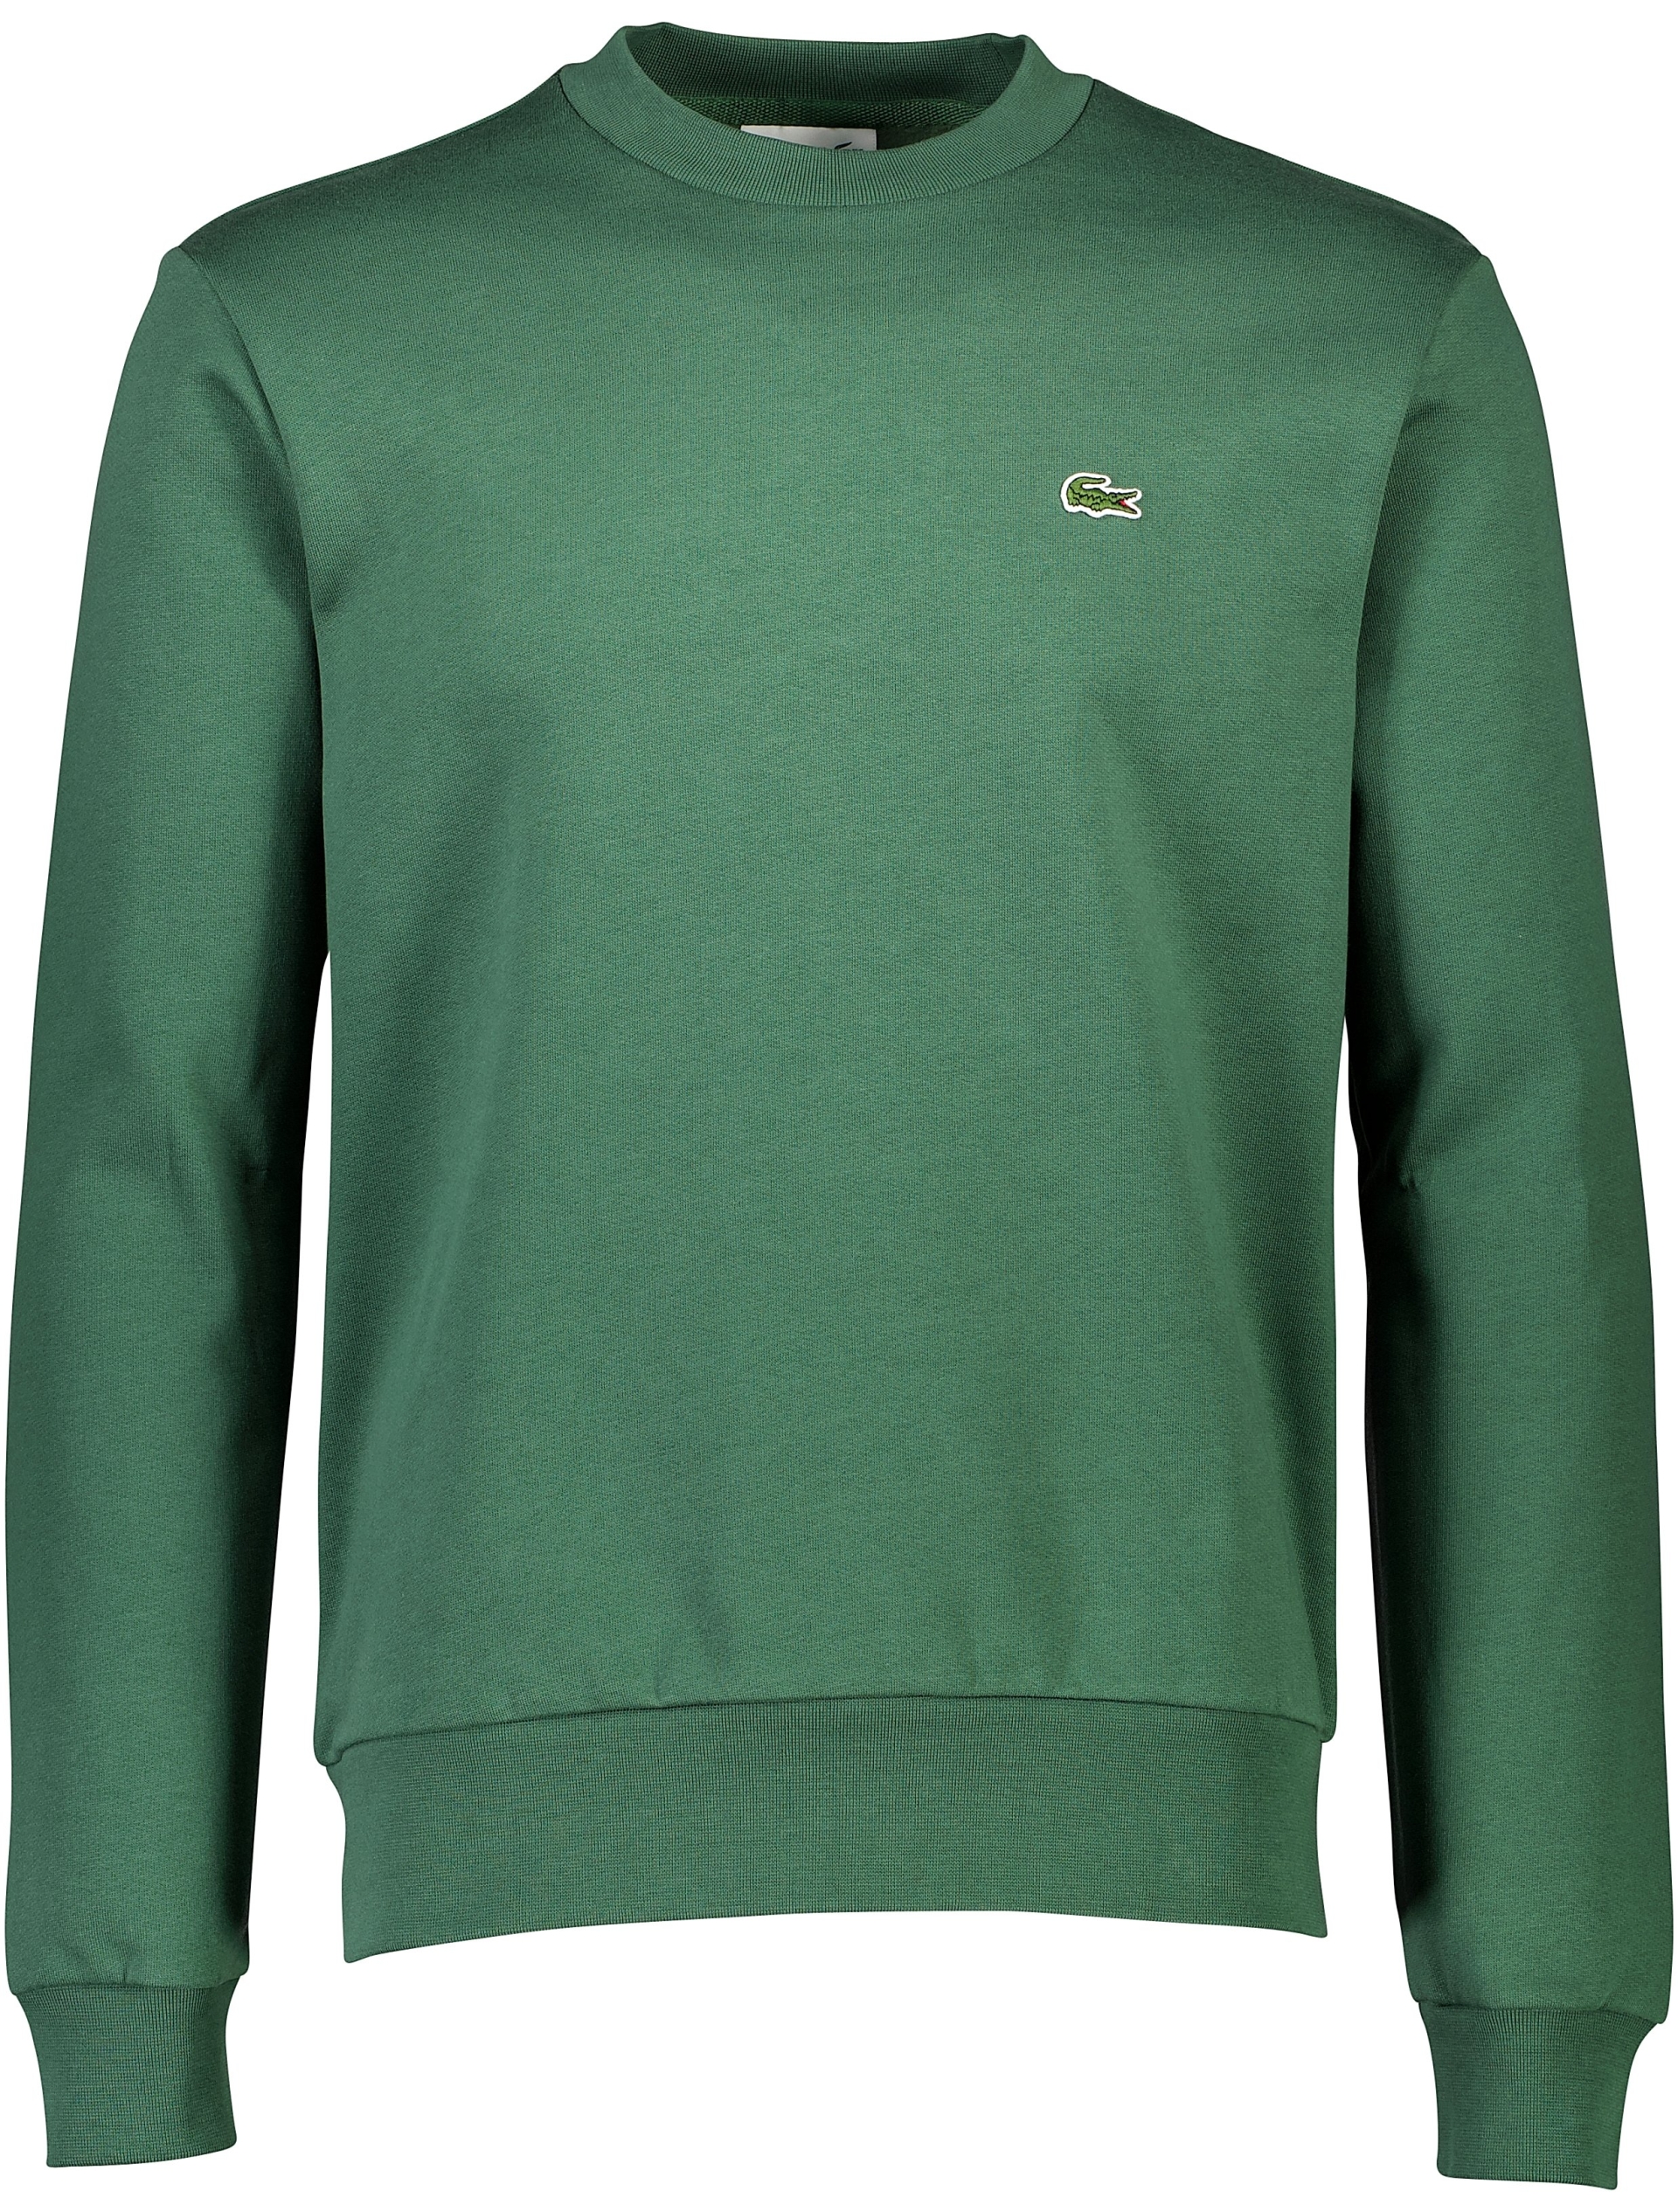 Lacoste Sweatshirt grøn / smi dk green